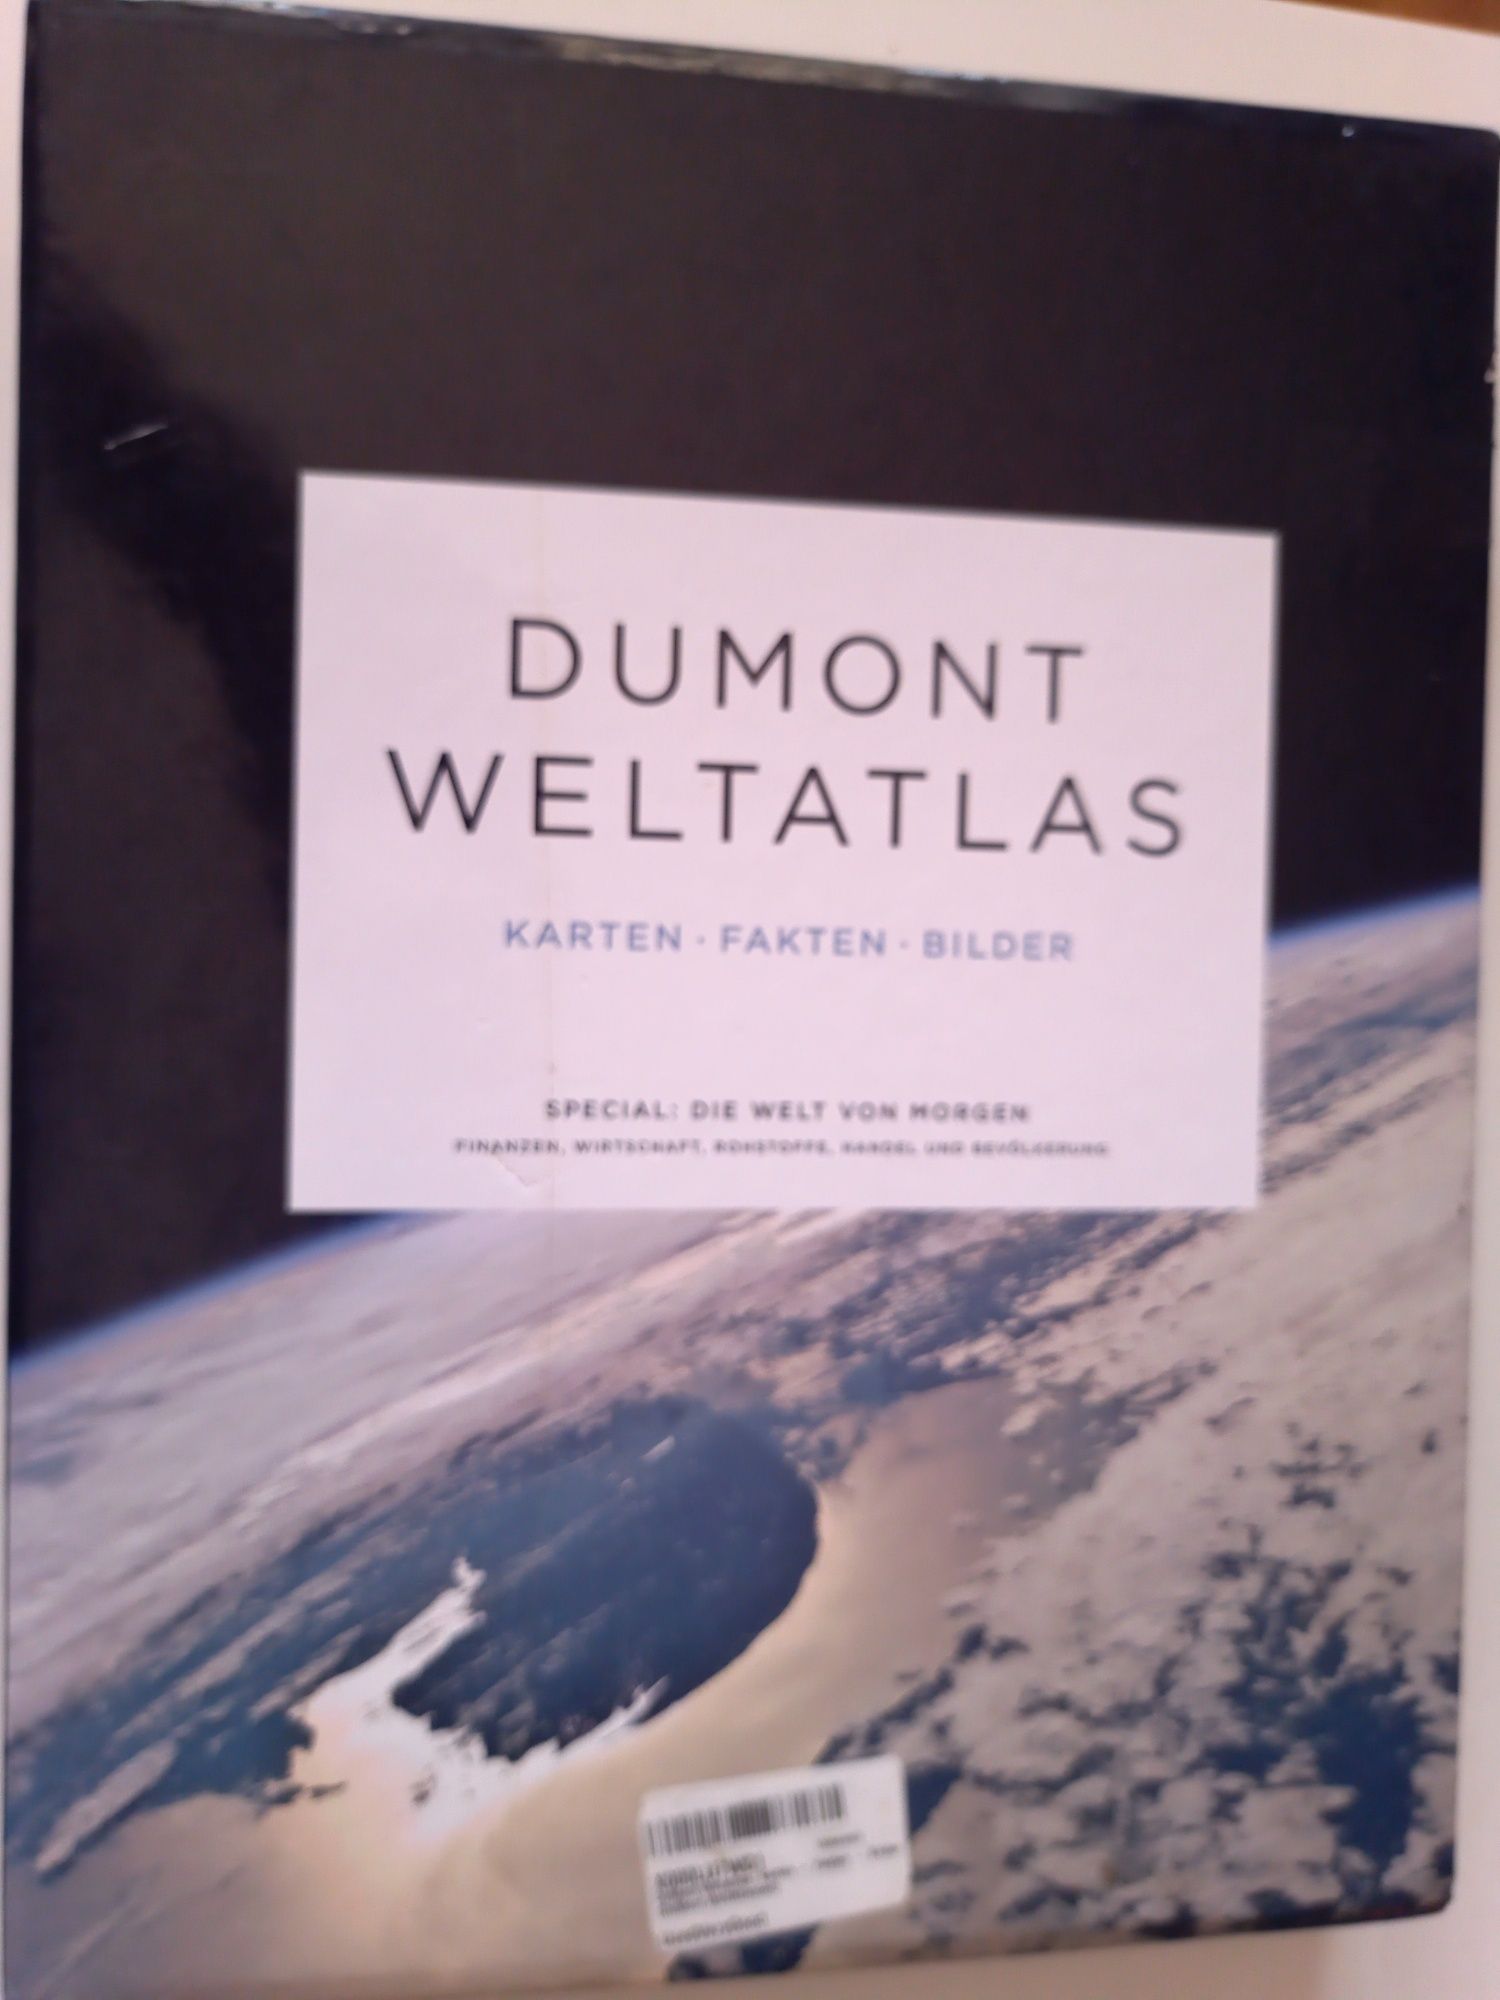 DuMont Weltatlas: Karten - Fakten - Bilder niemiecki atlas